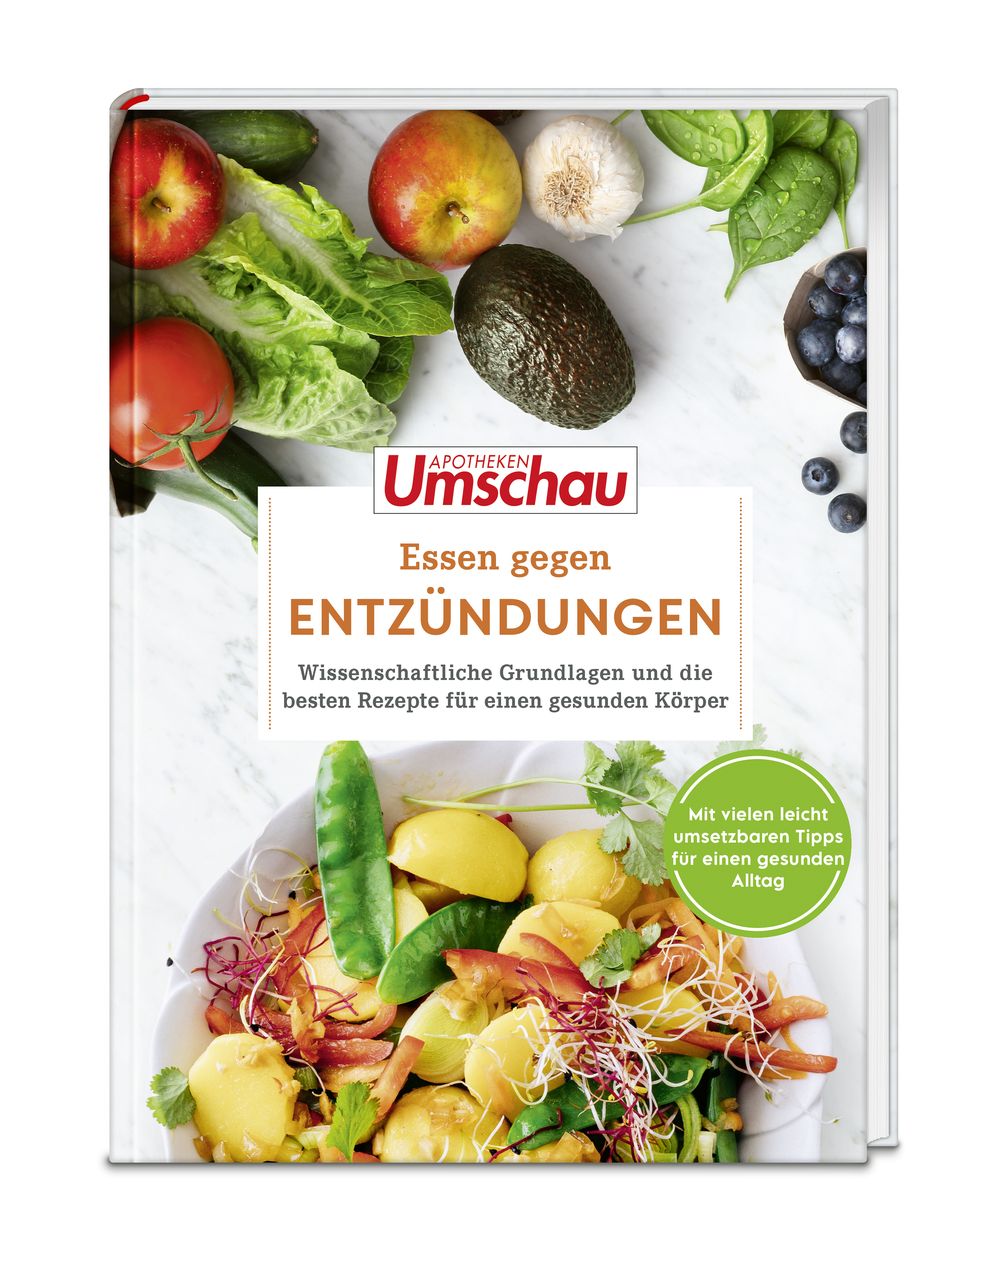 Titelcover des Apotheken Umschau-Ratgeberbuchs "Essen gegen Entzündungen" .  Bild: Wort & Bild Verlag Fotograf: Wort & Bild Verlag